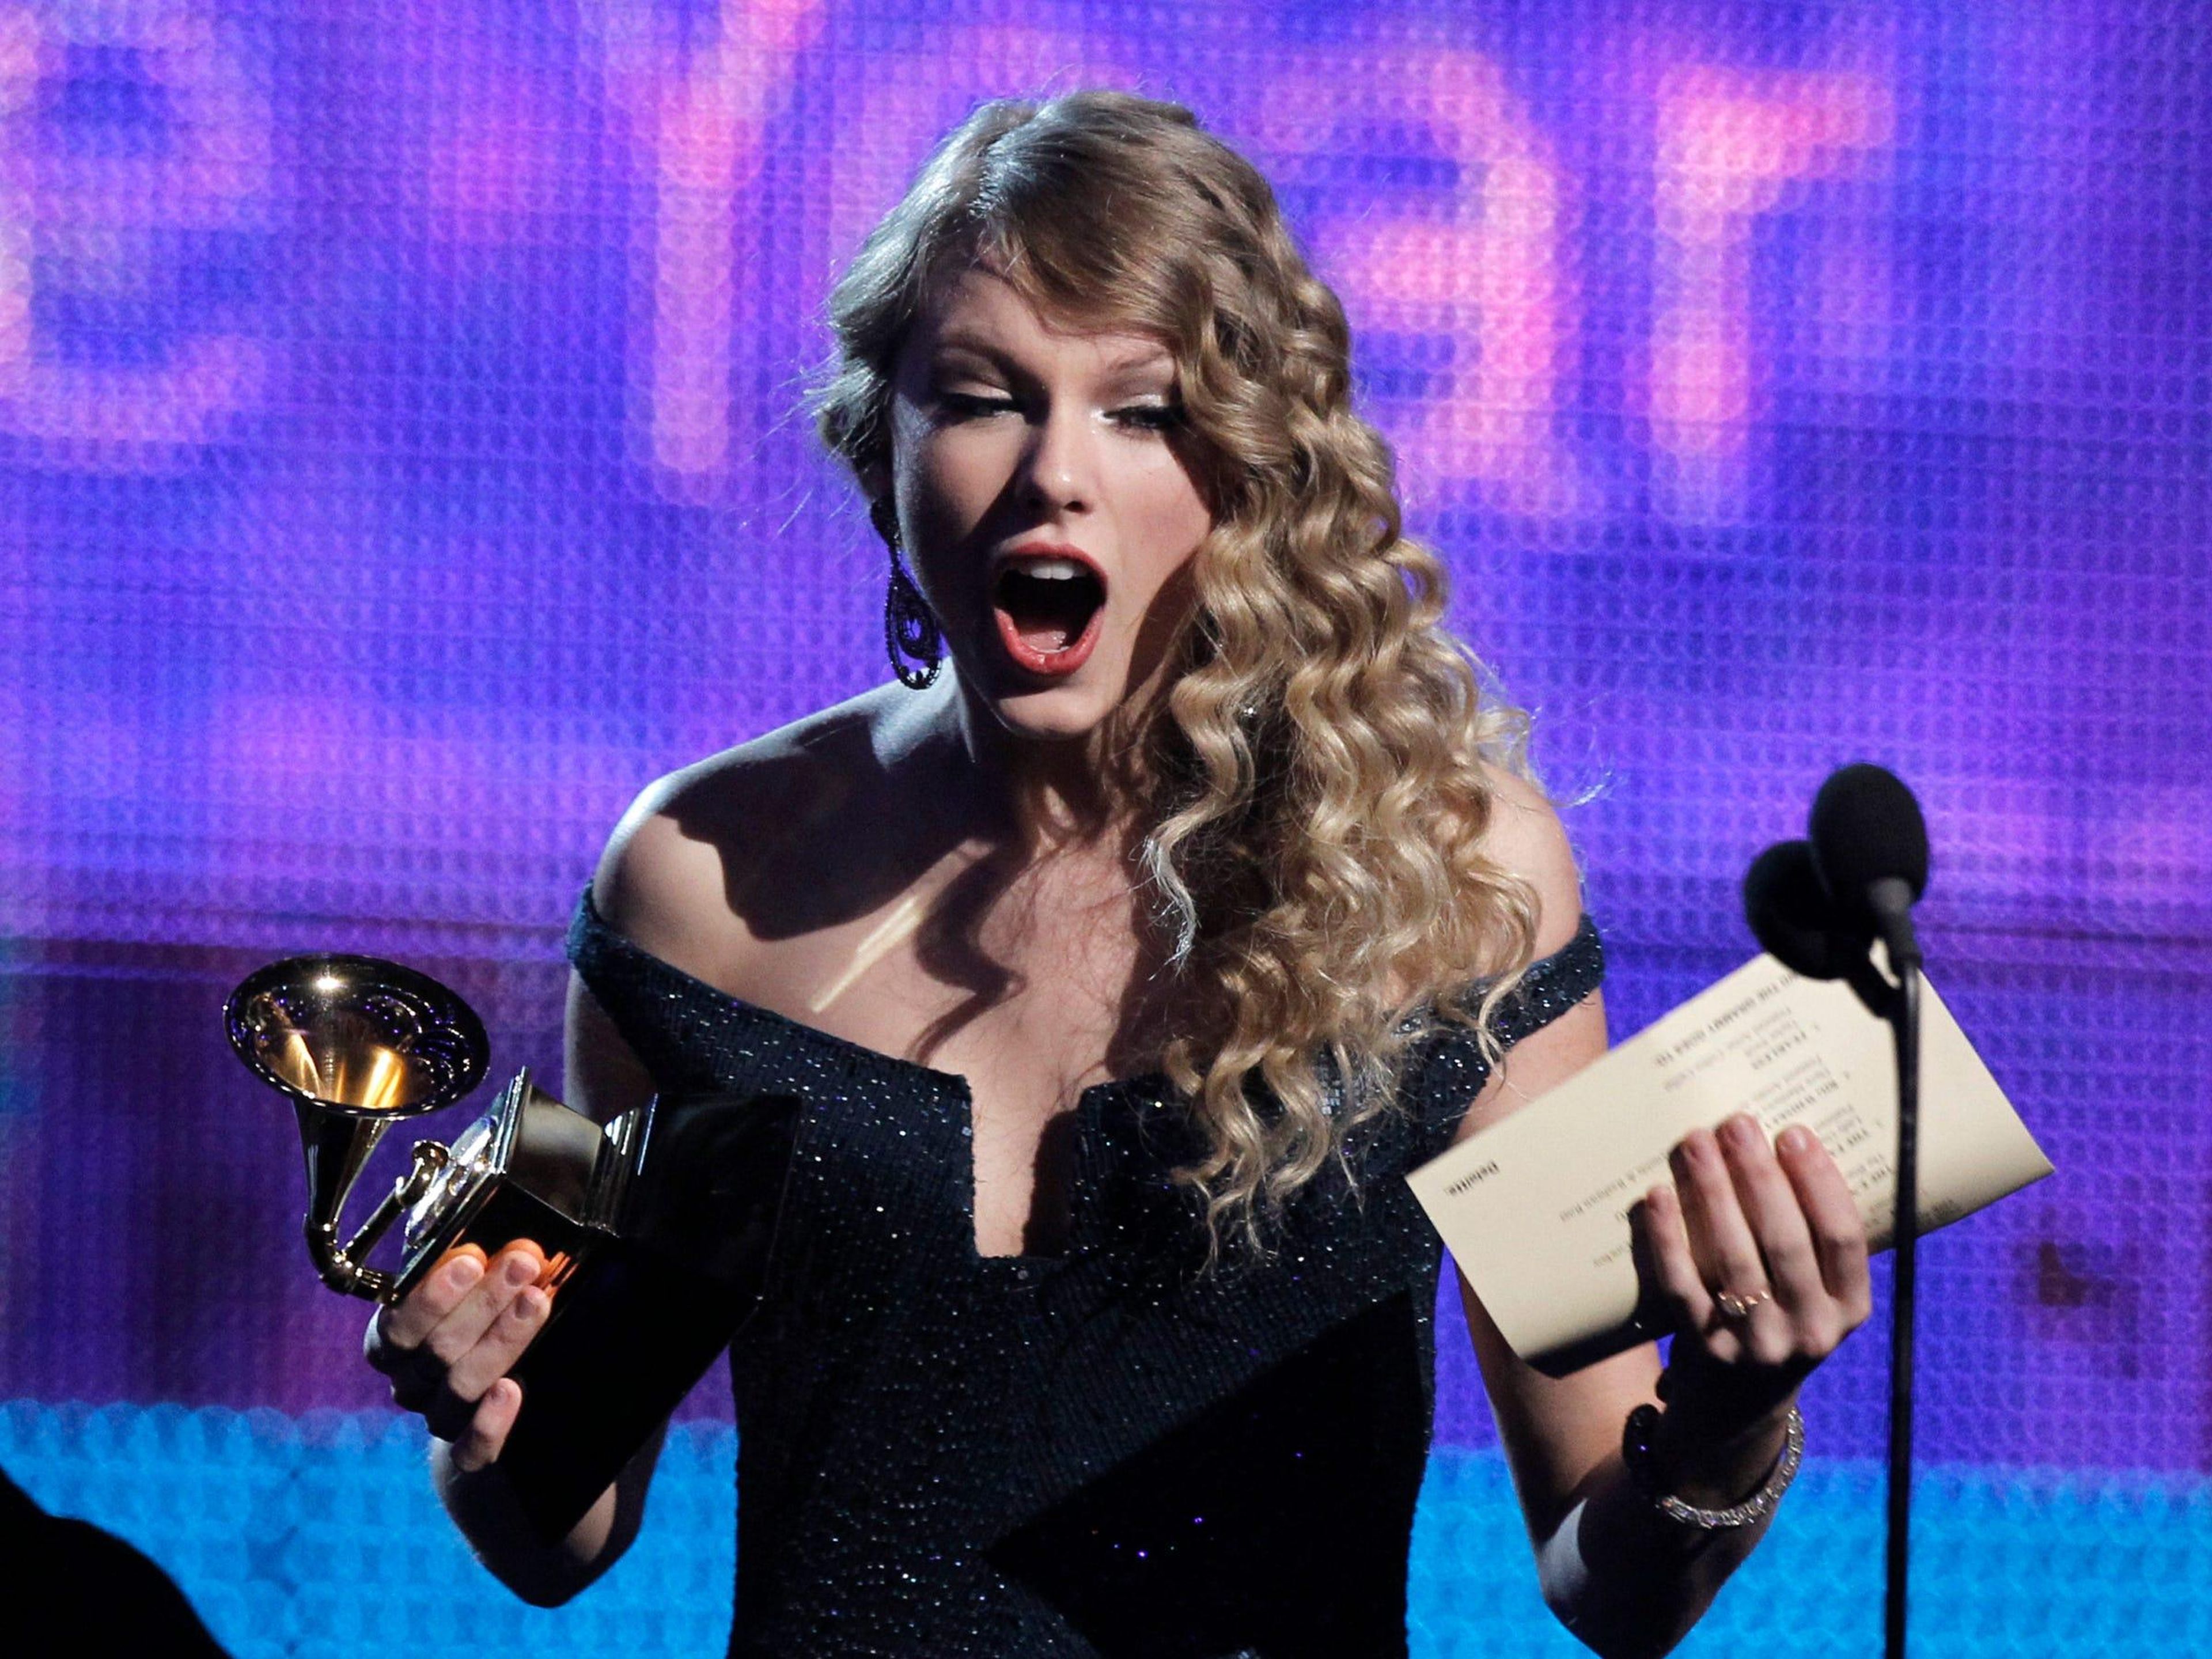 En 2010, Taylor Swift se convirtió en el artista más joven en ganar el Álbum del Año.